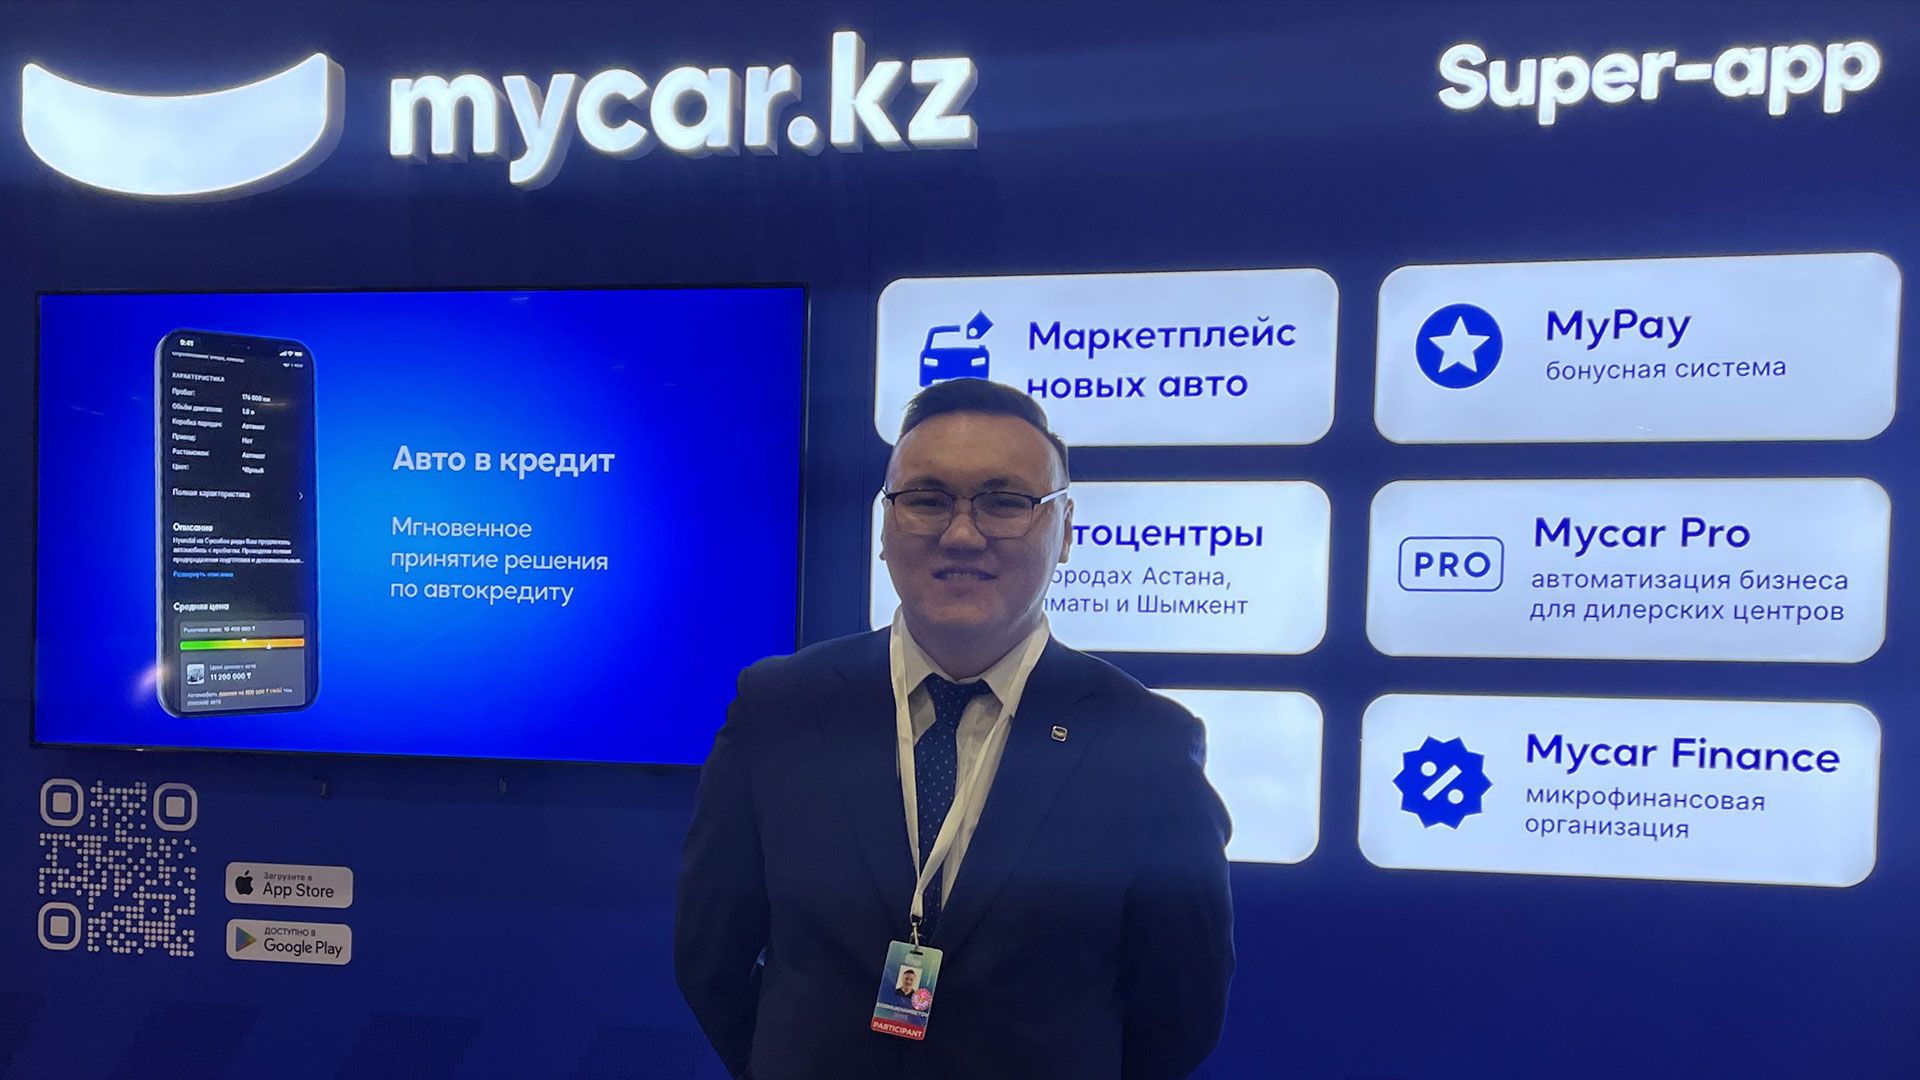  Диас Досмуханбетов, заместитель исполнительного директора Mycar.kz